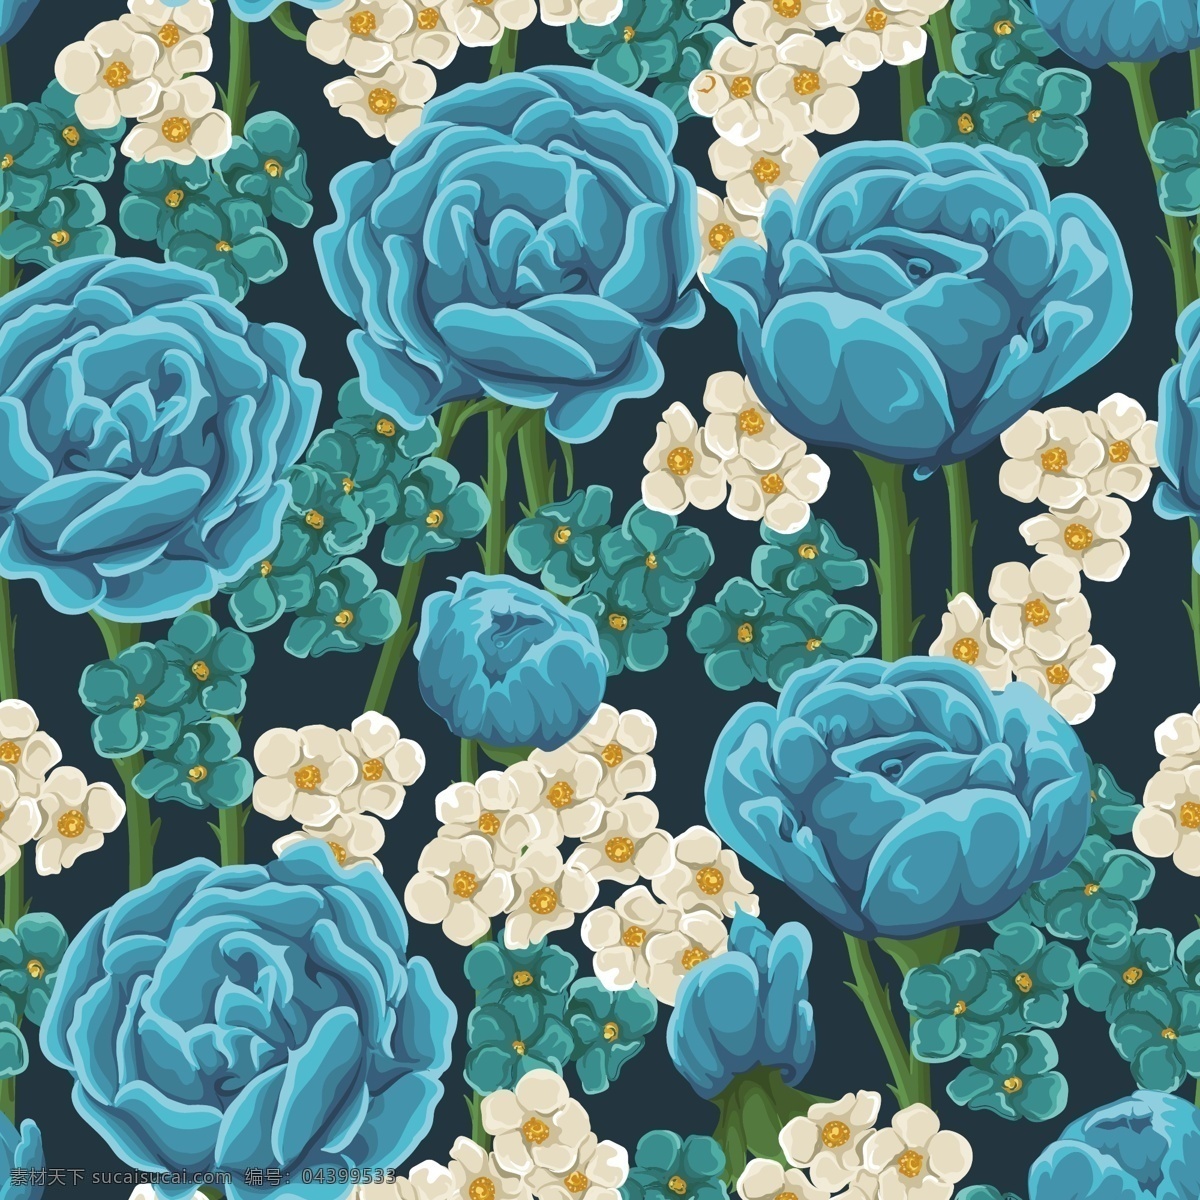 蓝 玫瑰 花卉 无缝 背景 矢量 蓝玫瑰 无缝背景 艳丽 精美 青色 天蓝色